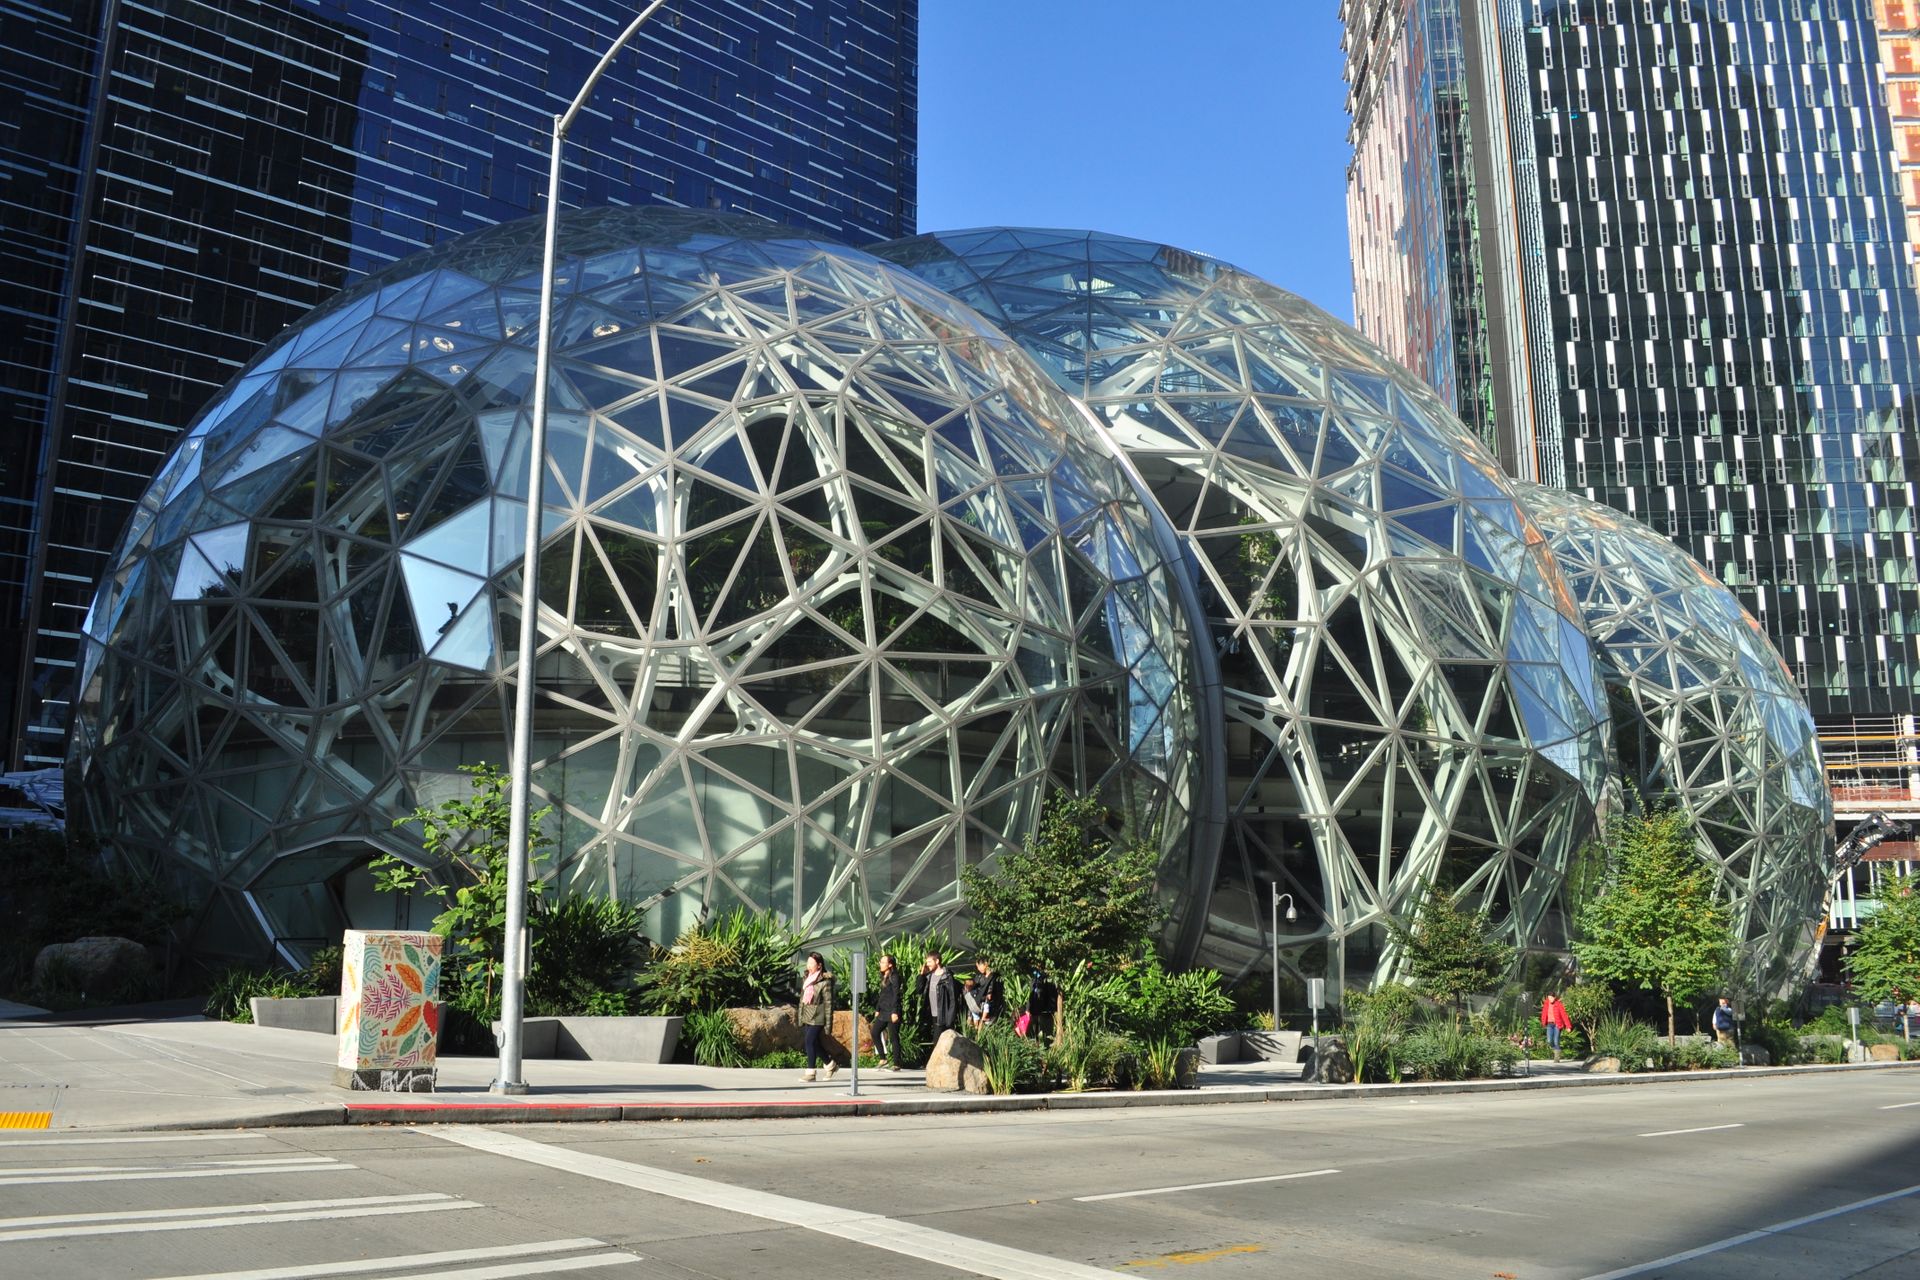 Spheres ทำงานโดยตรงที่สำนักงานใหญ่ของ Amazon ในซีแอตเติลในรัฐวอชิงตันของสหรัฐอเมริกา